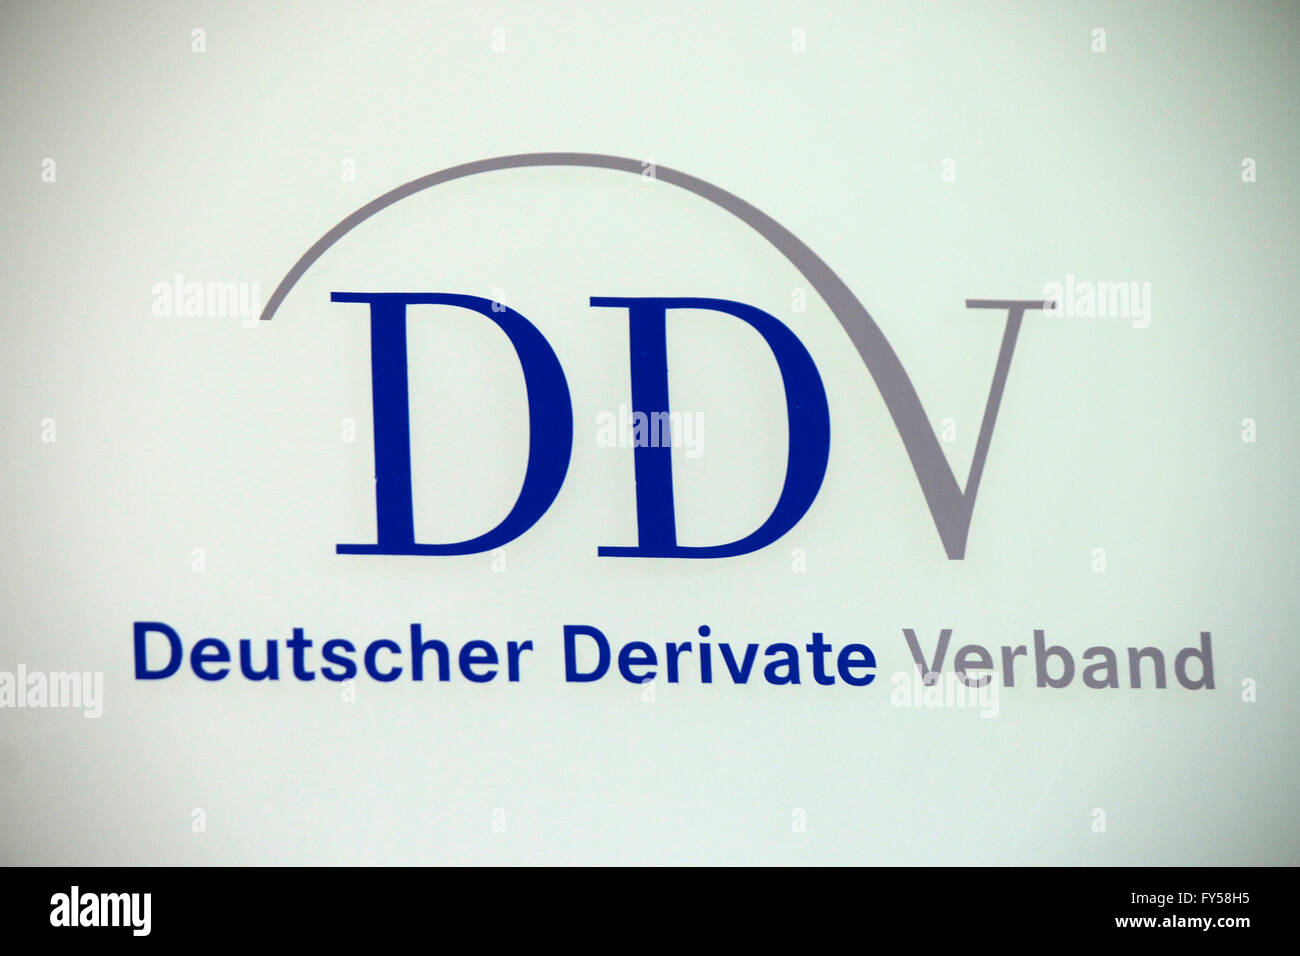 das Logo der Marke "DDV Deutscher Derivate Verband", Berlin. Stock Photo